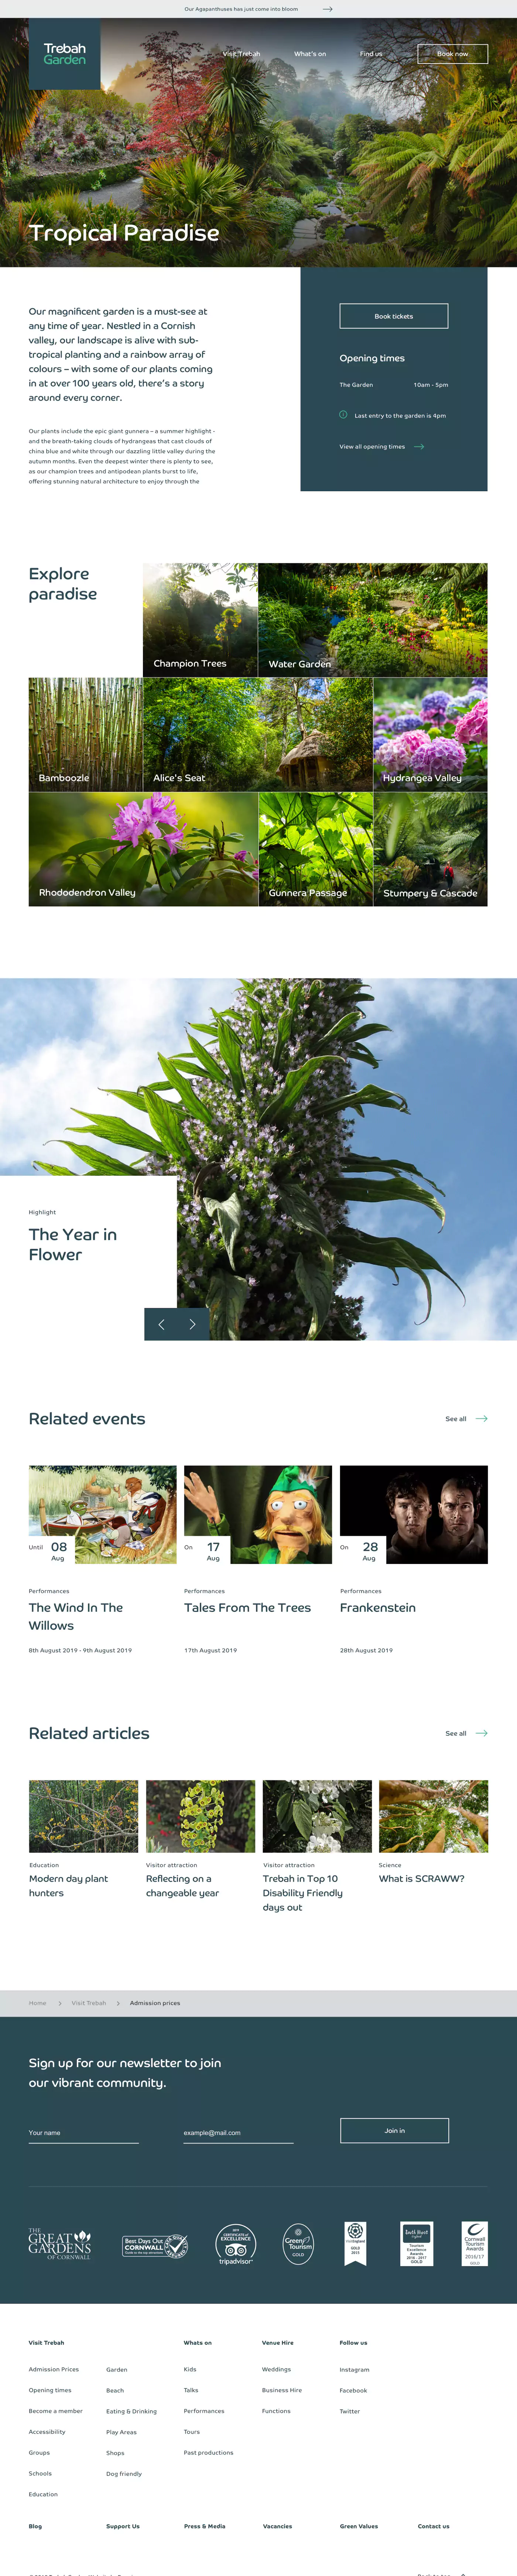 Trebah Garden website design